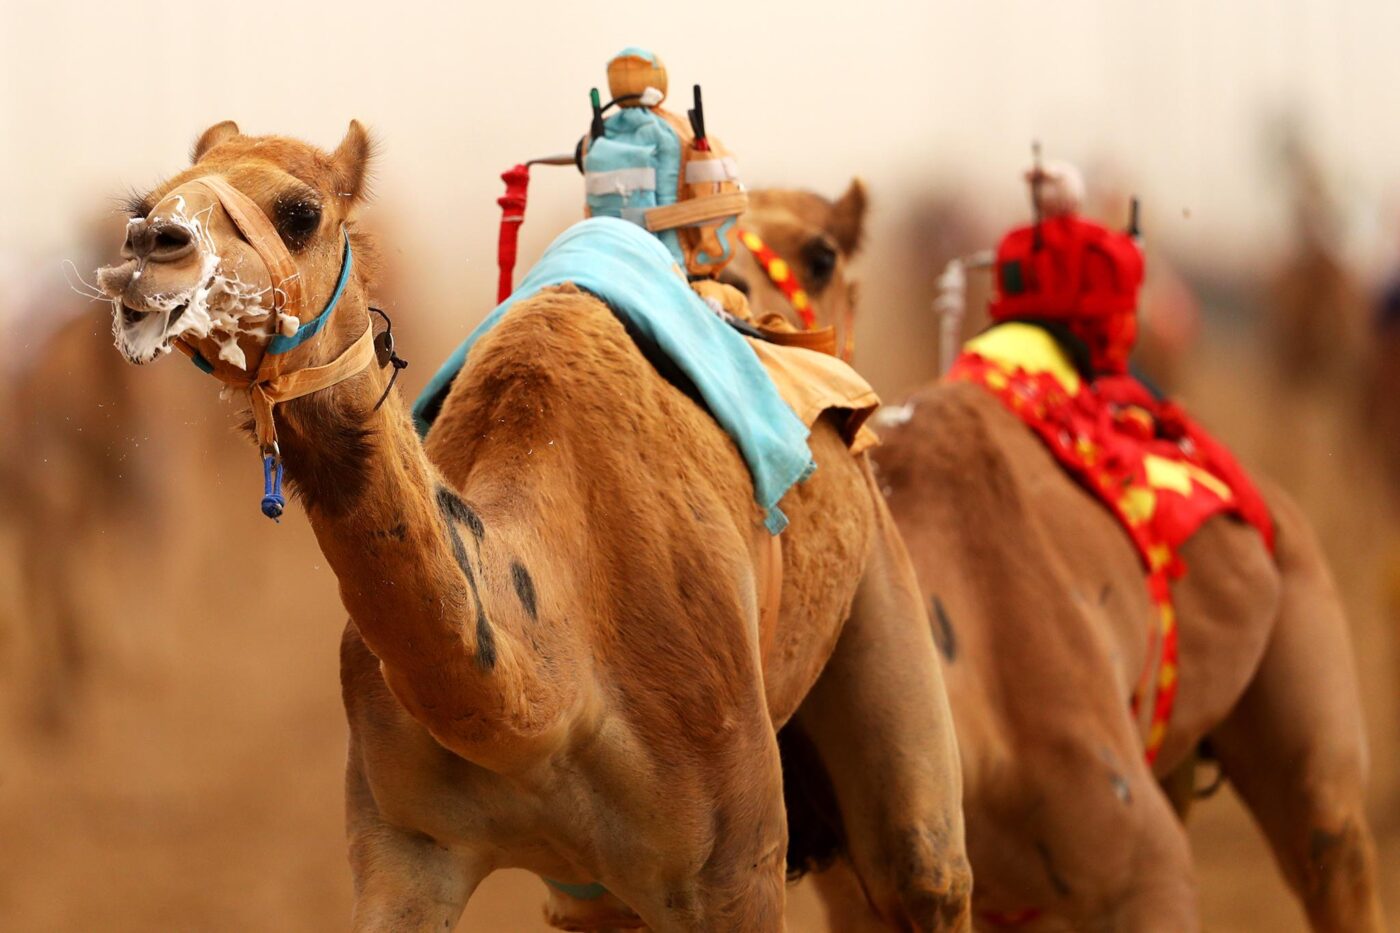 Carreras de camellos